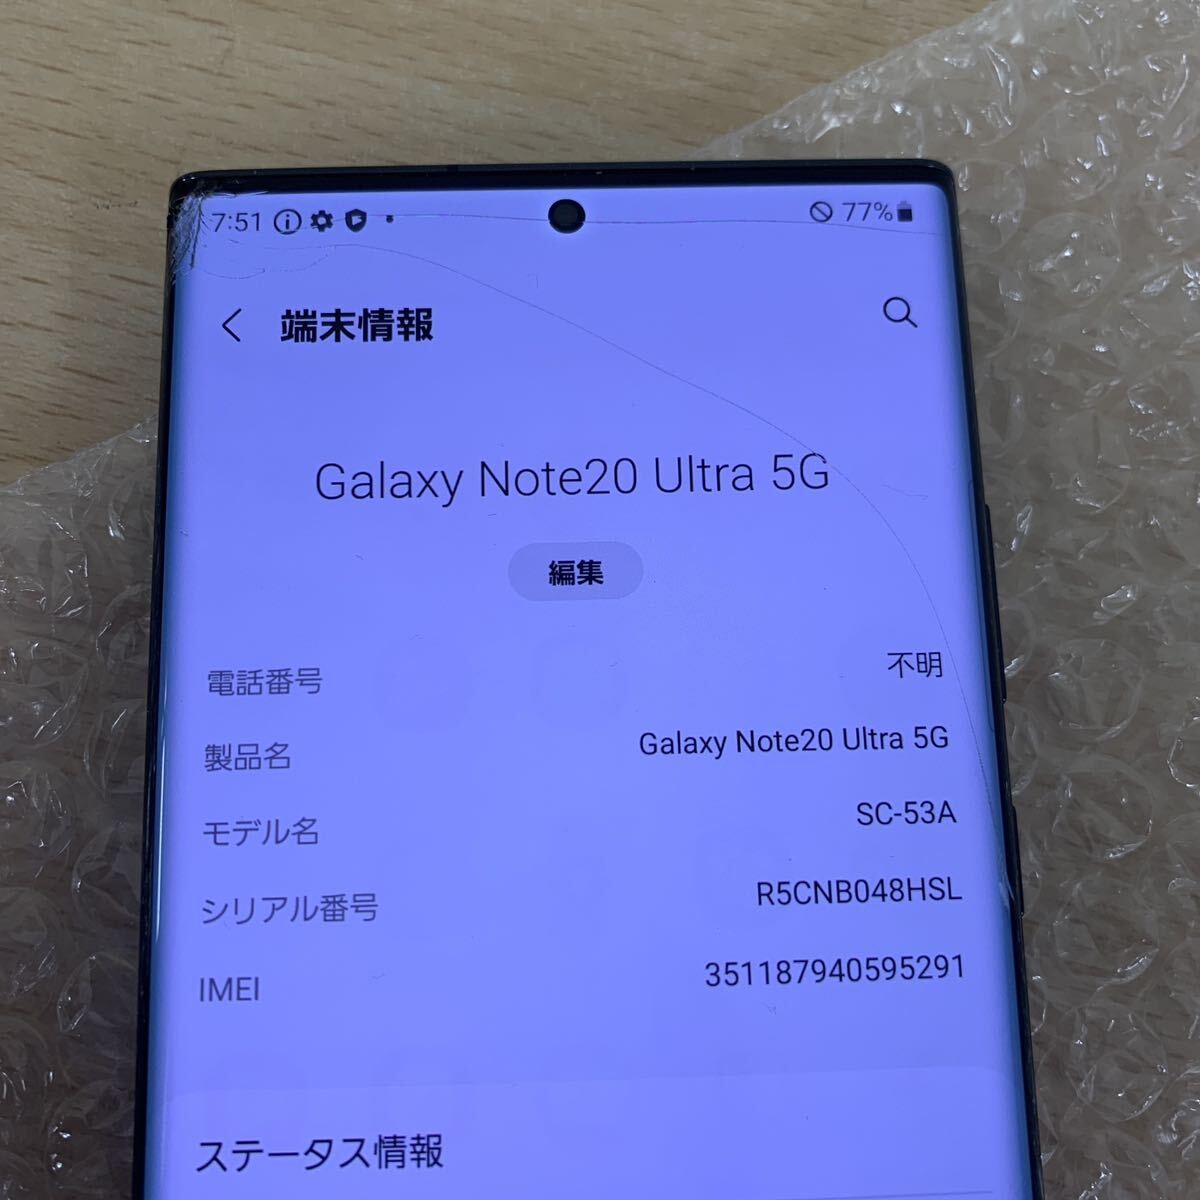  б/у товар текущее состояние Galaxy Note20 Ultra 5G SC-53A смартфон DoCoMo суждение :0